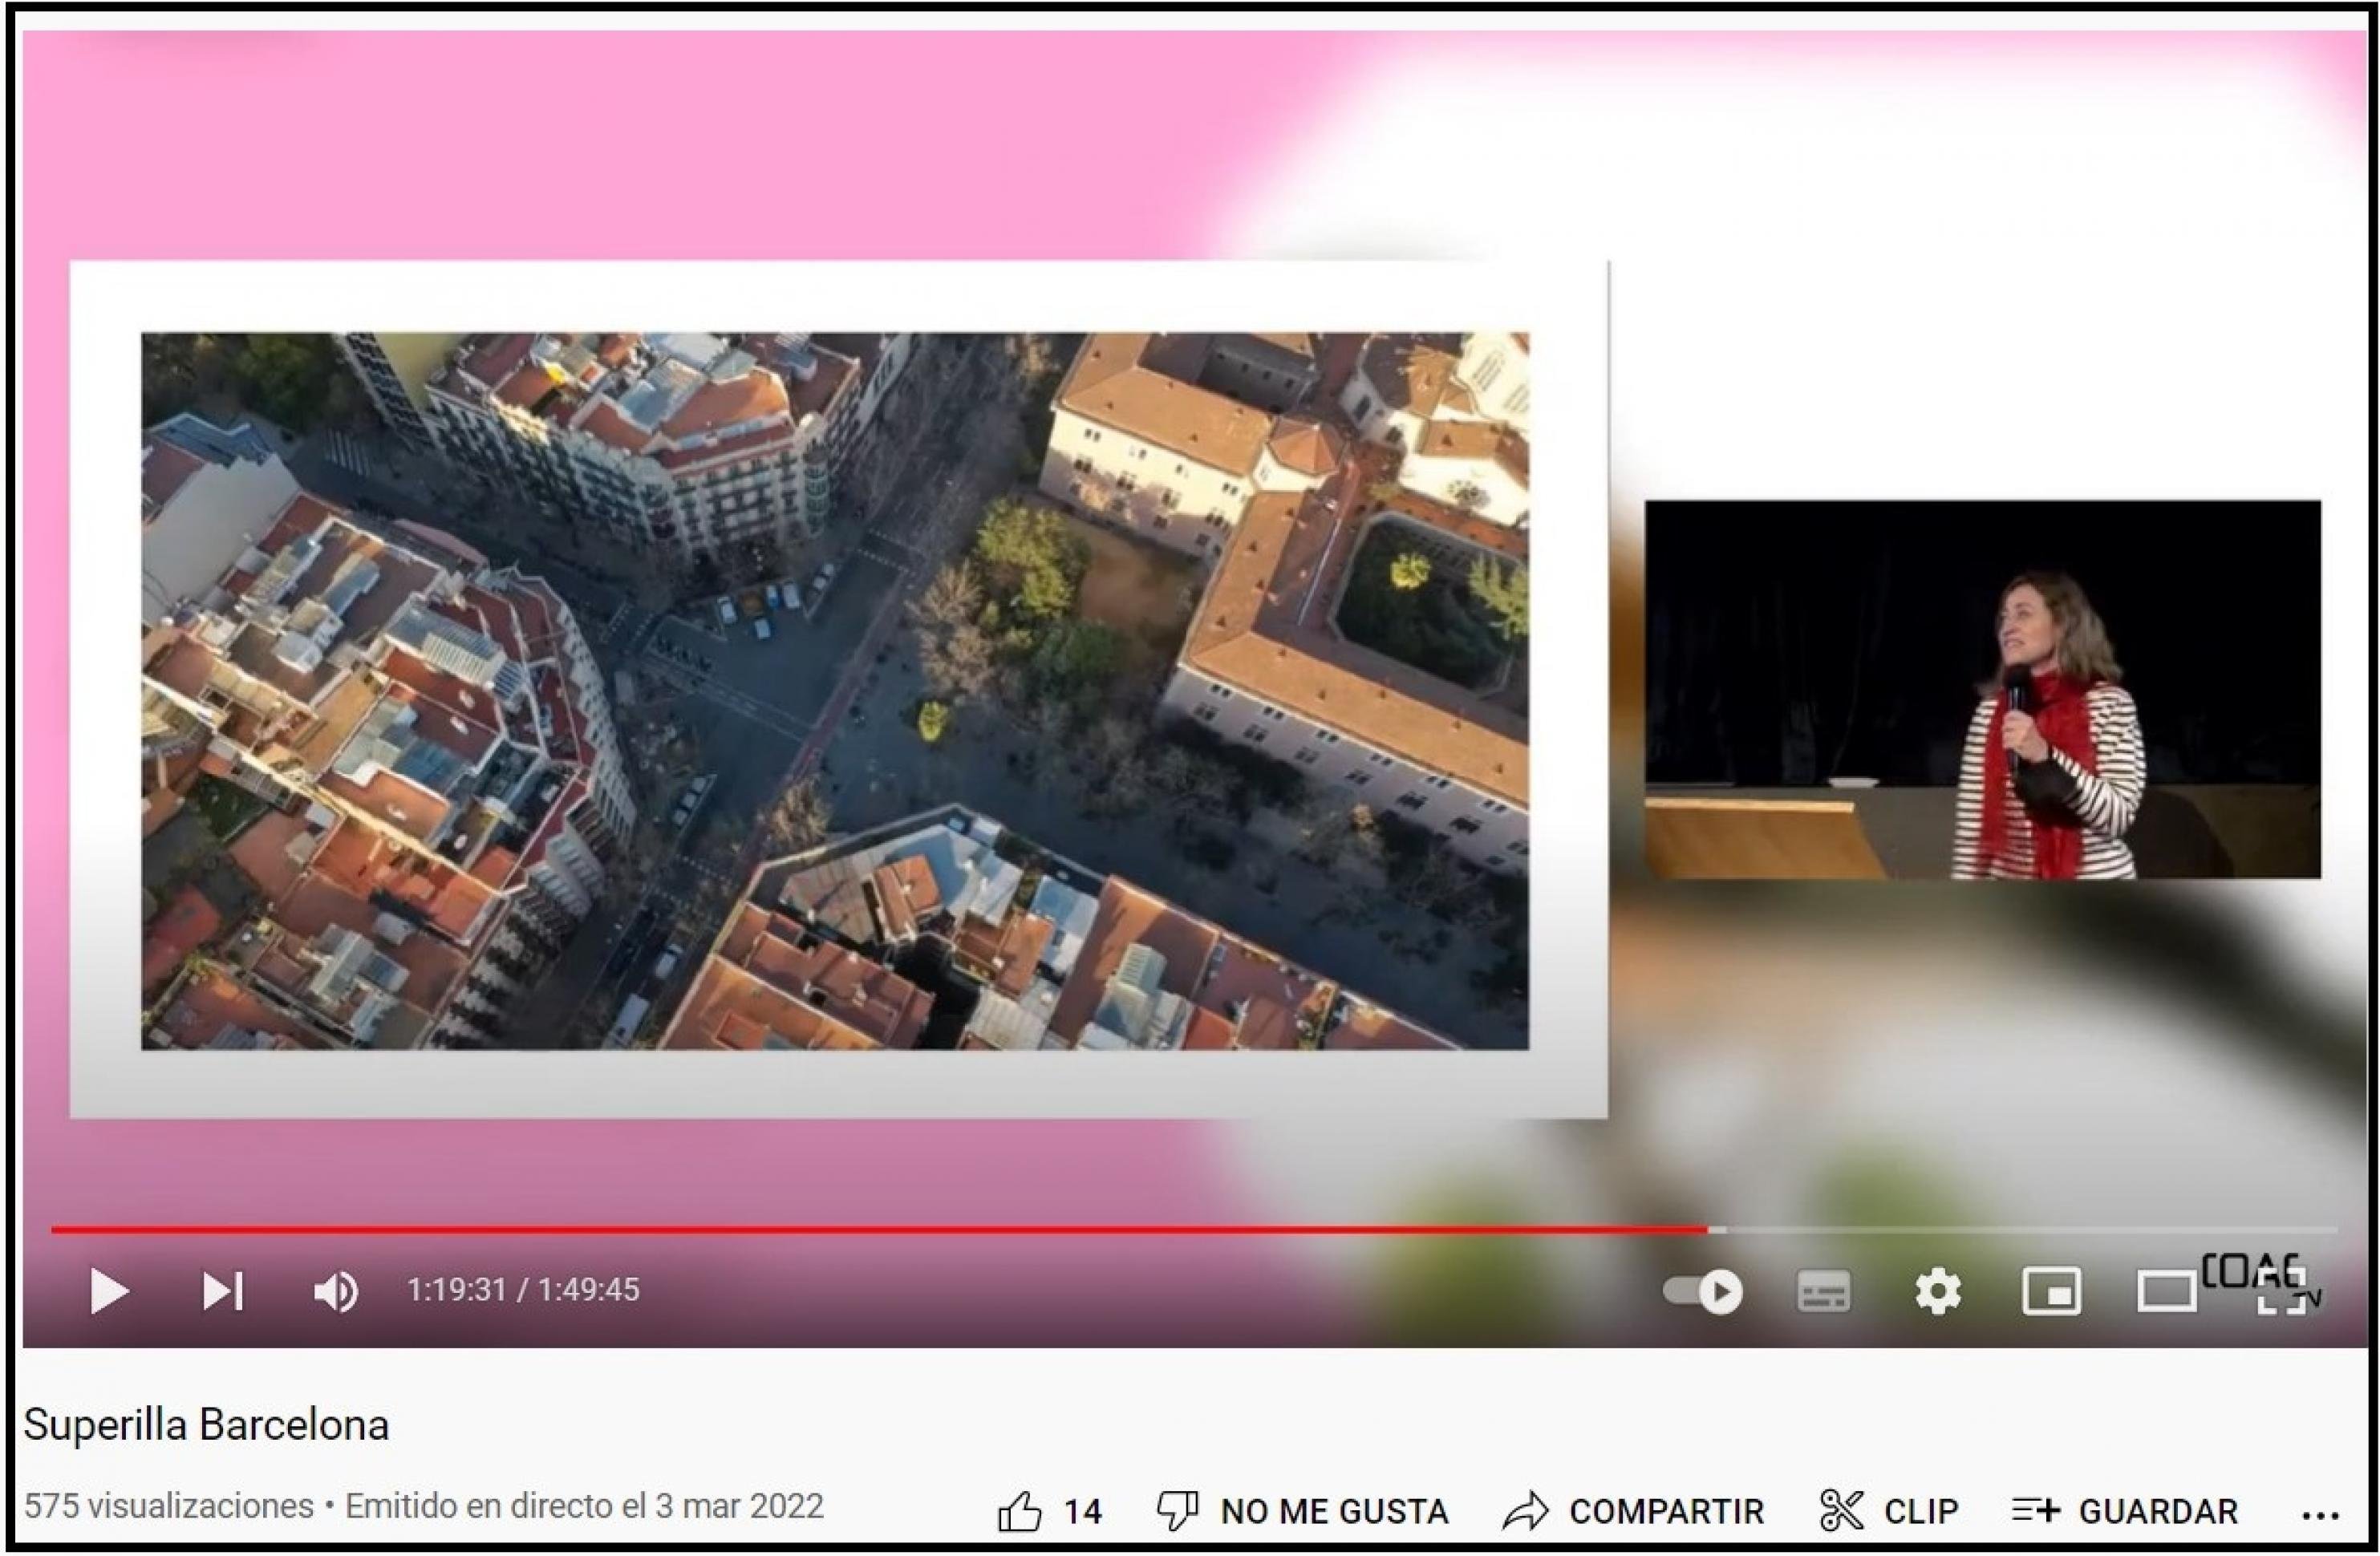 Auf der linken Bildseite ist eine Straßenkreuzung inmitten hoher Wohnblocks zu sehen, auf die die Präsentatorin im Video auf der rechten Bildseite hinweist.